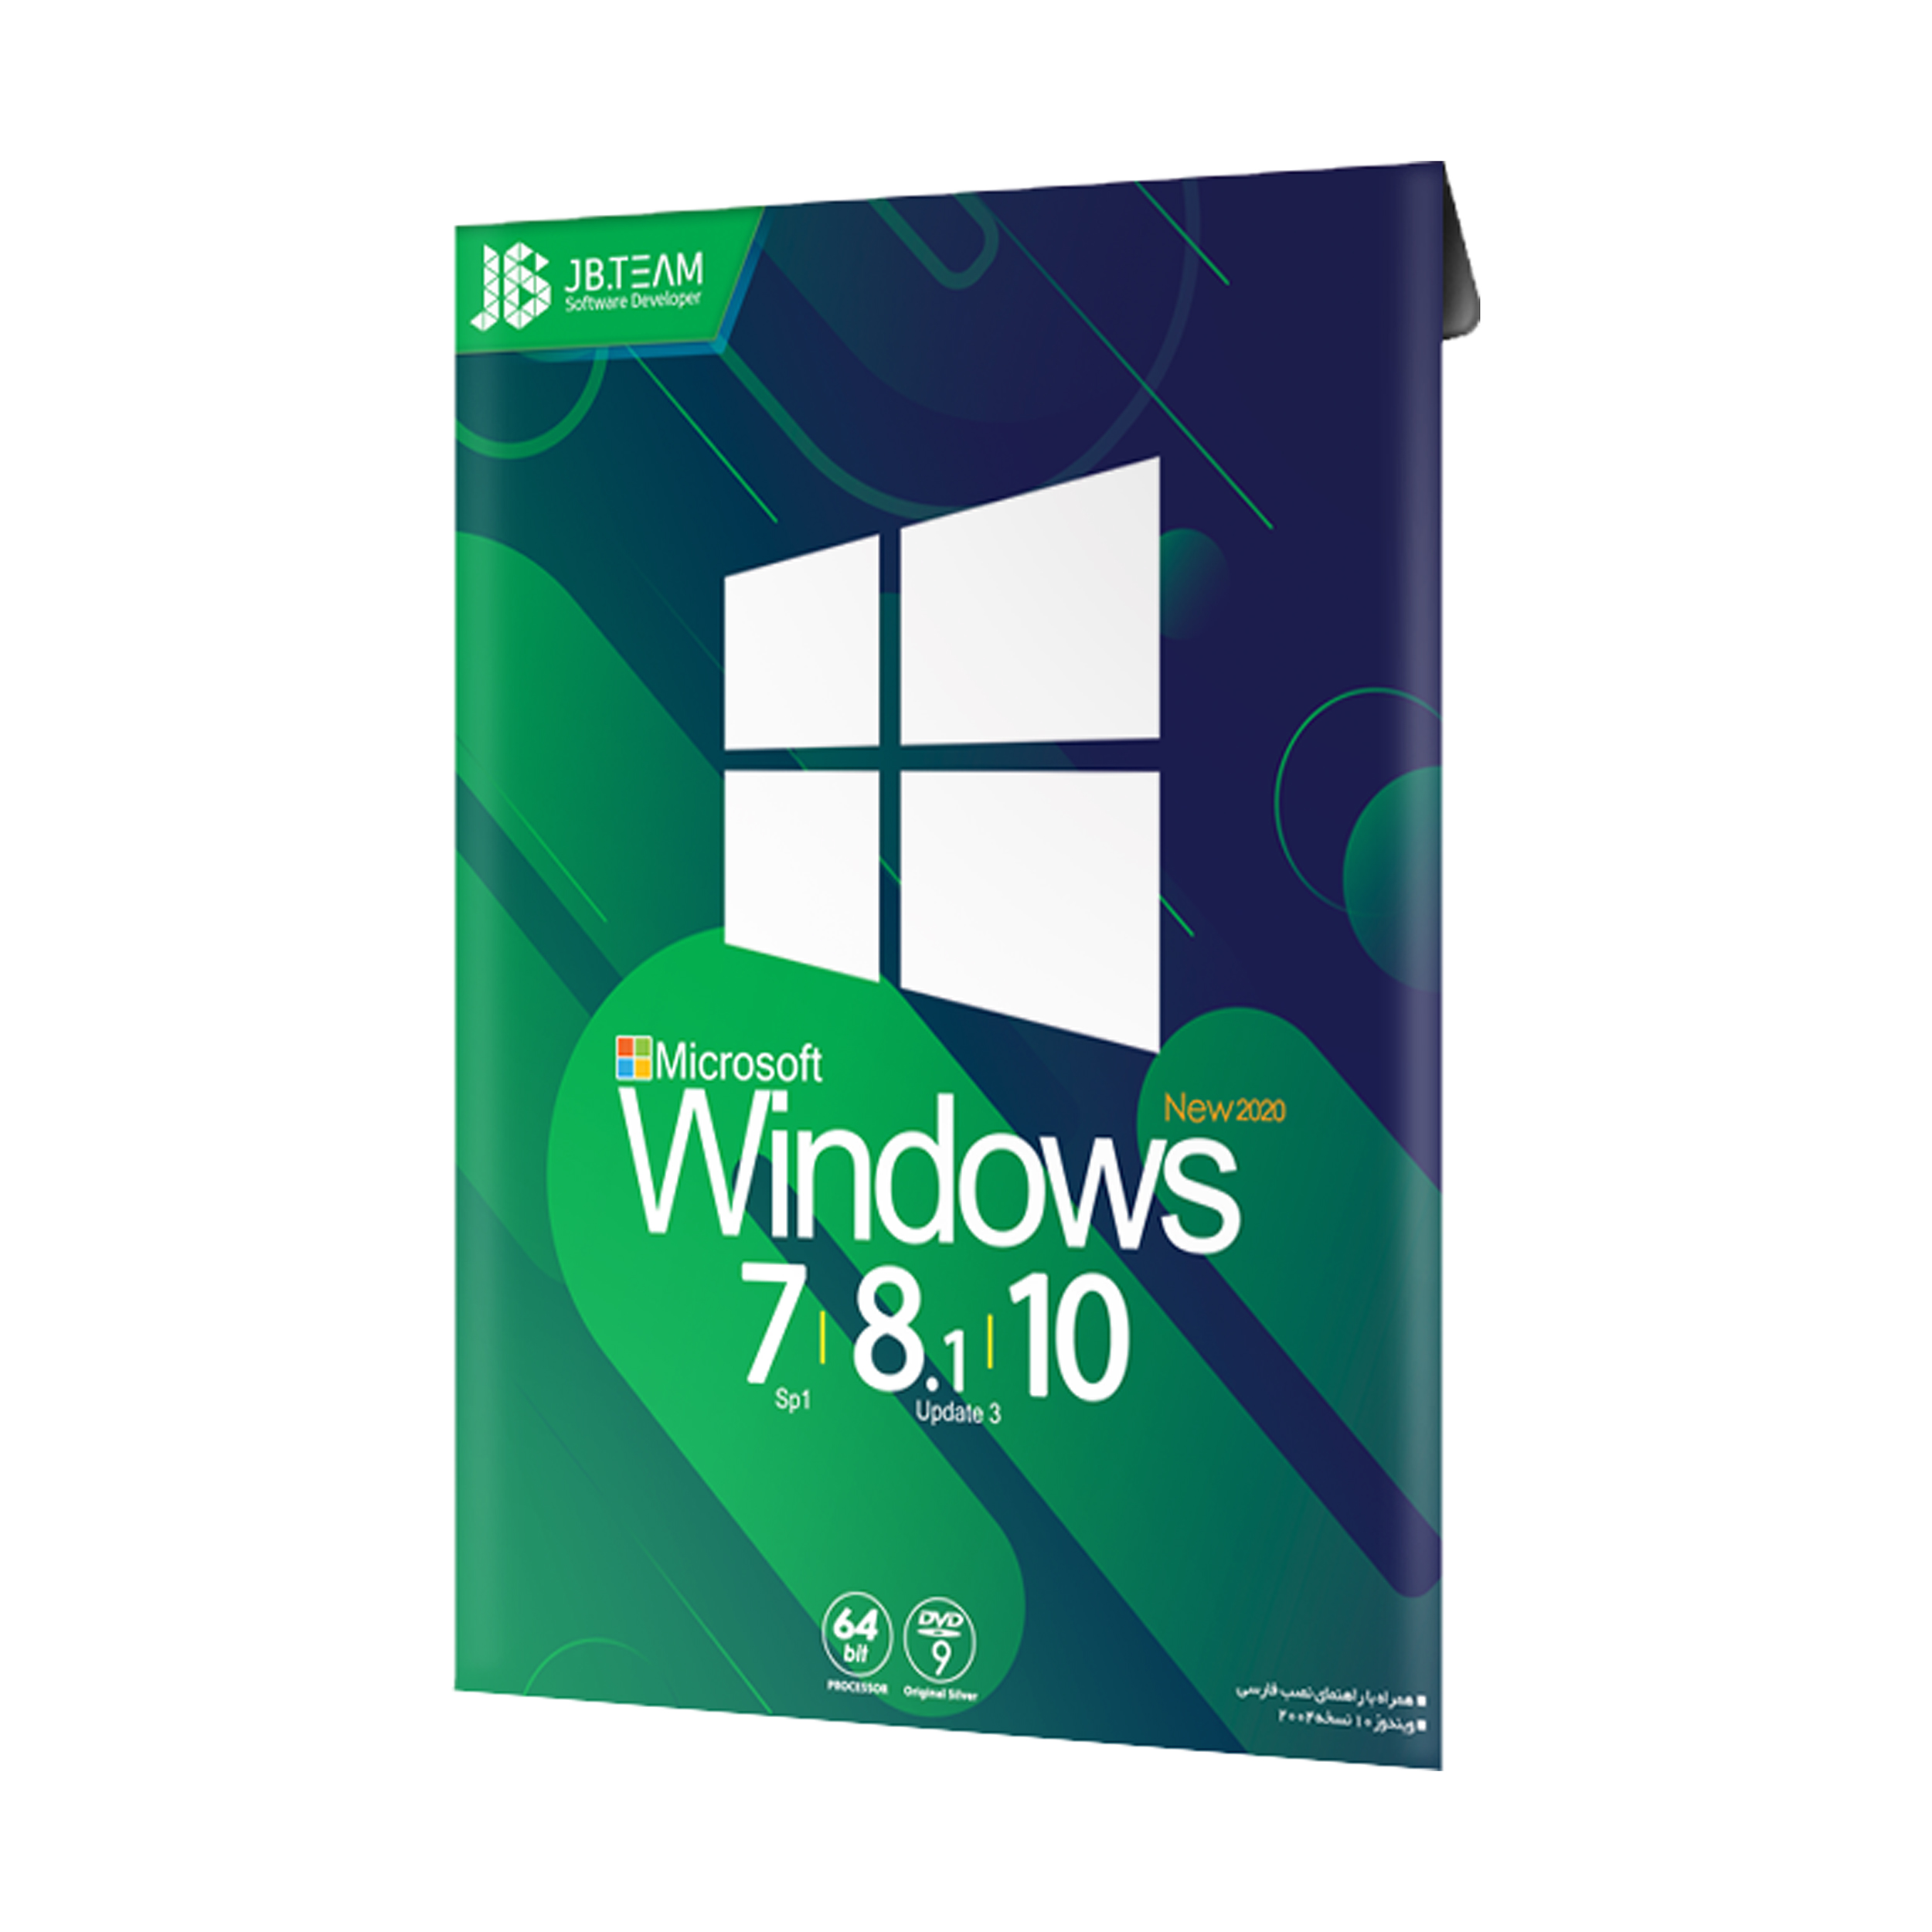 سیستم عامل Windows Collection 7 / 8.1 /10 New نشر جی بی تیم